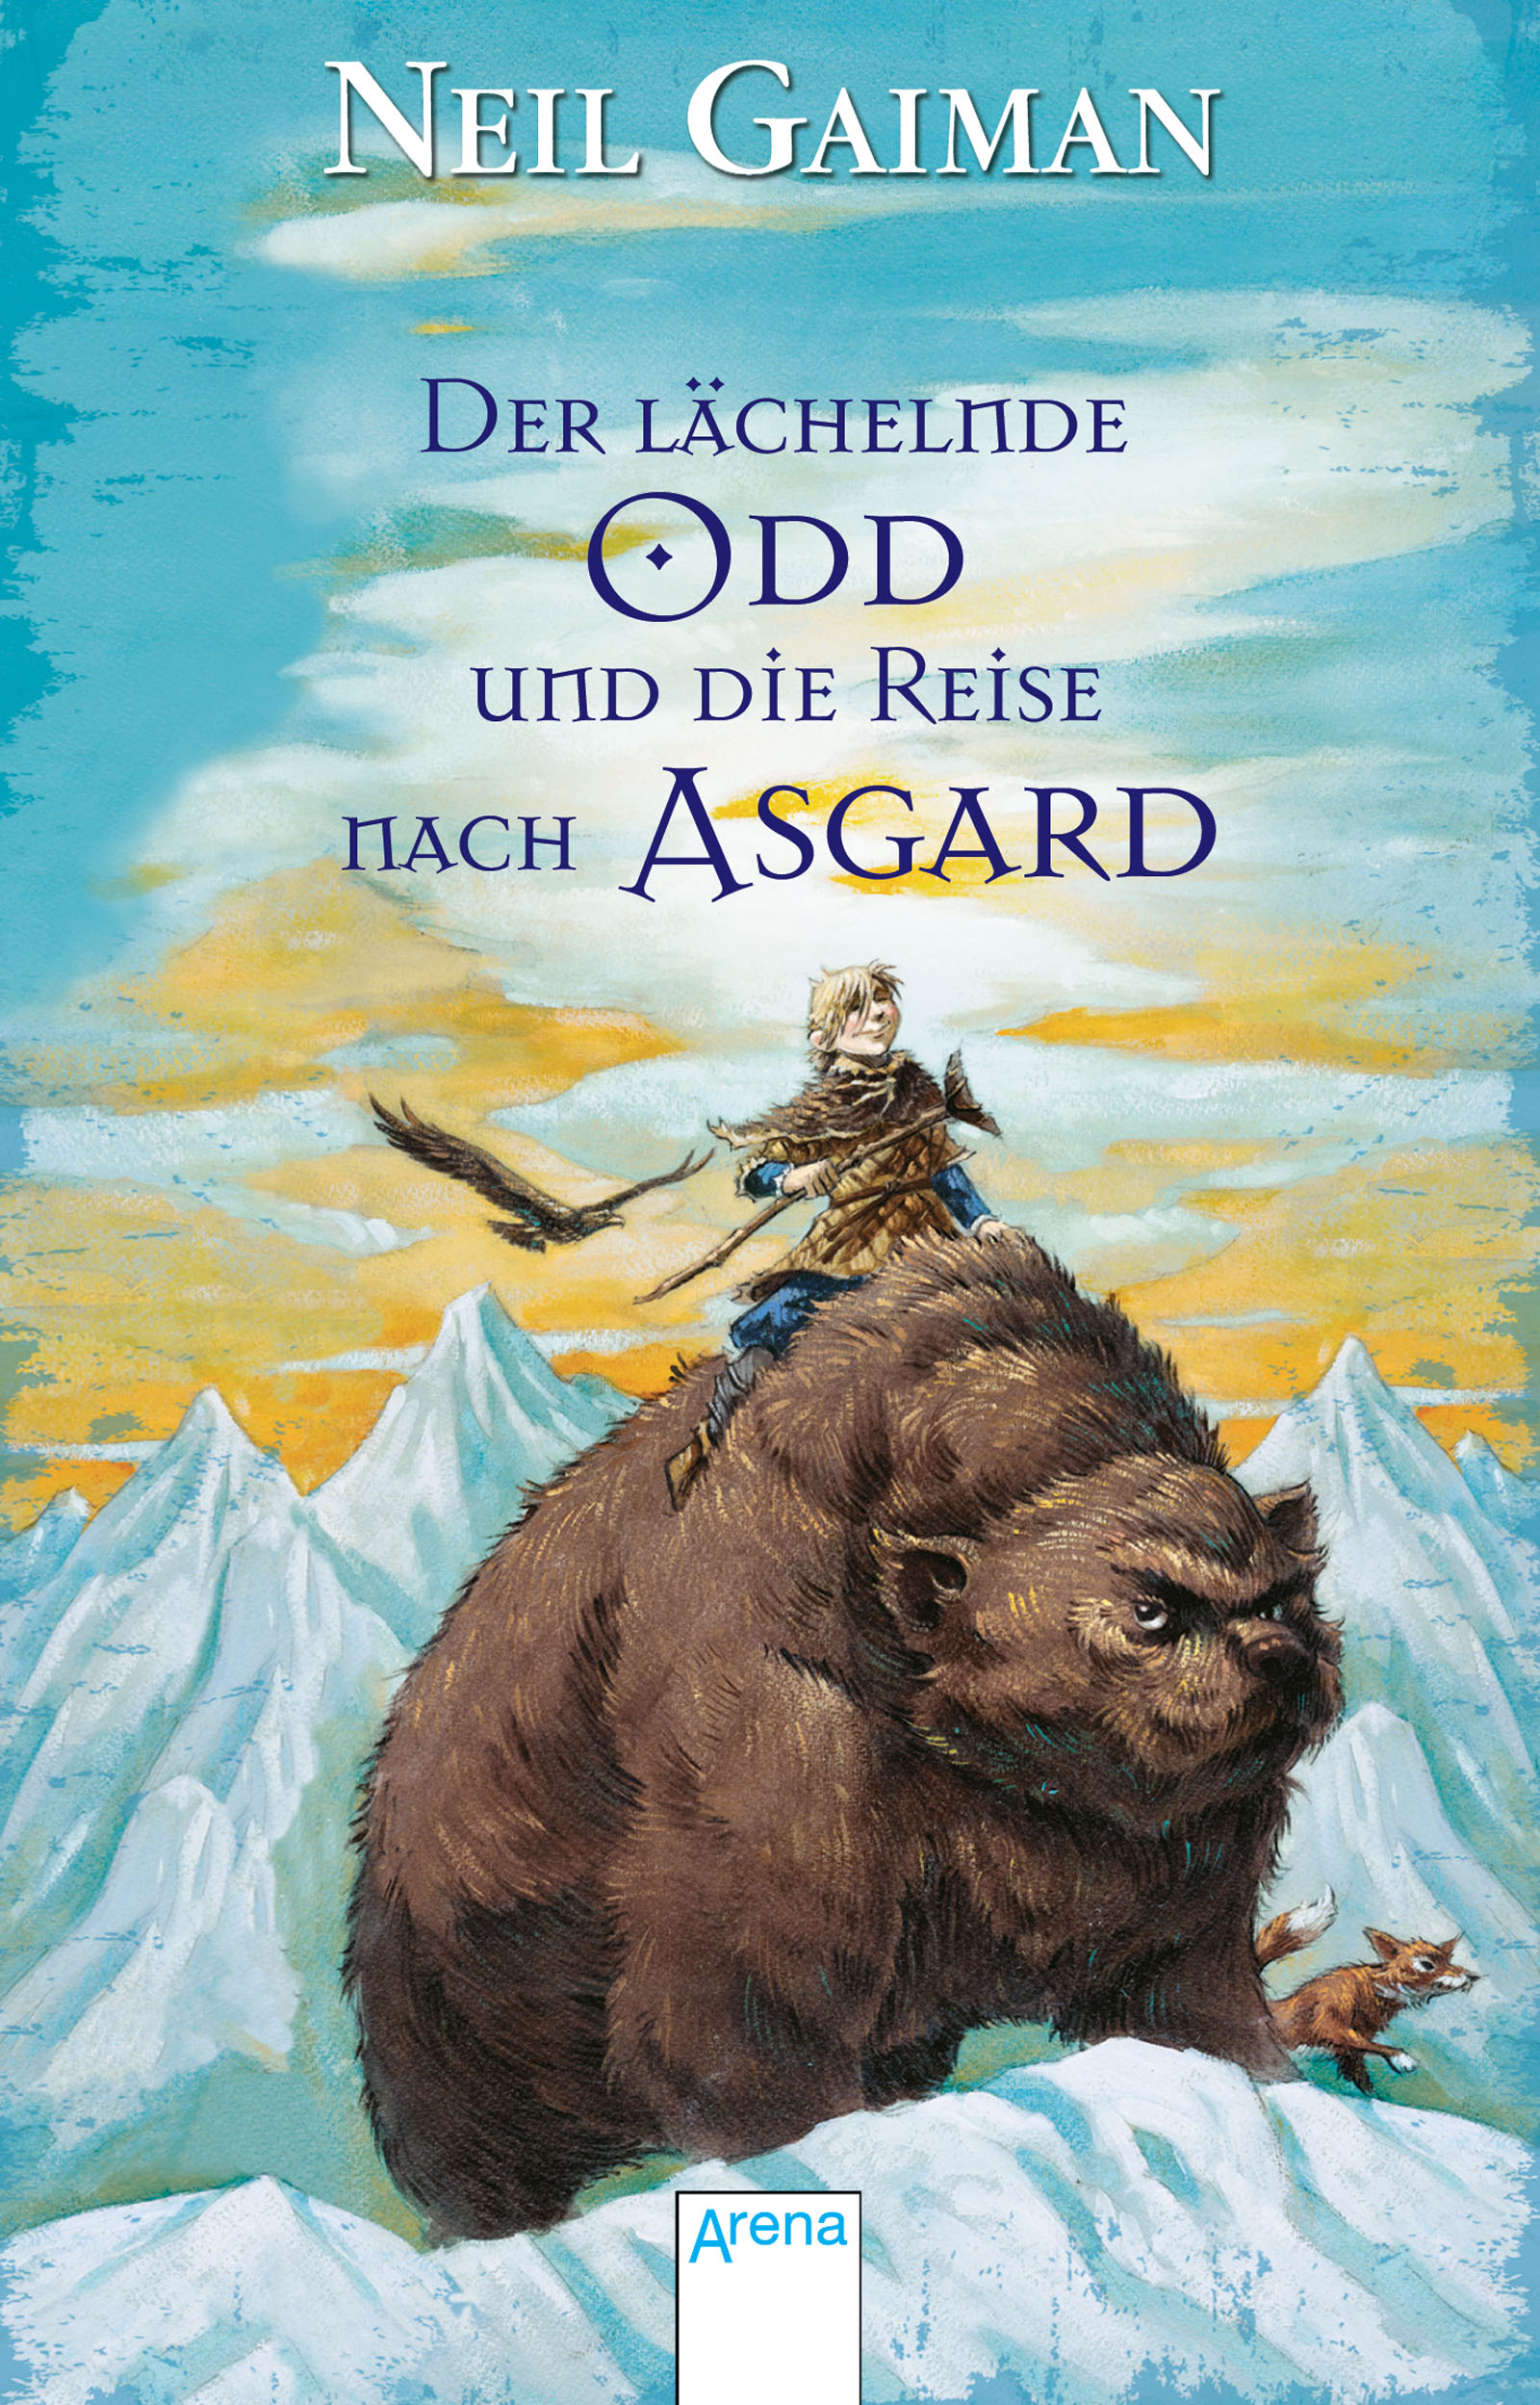 Buchempfehlung: "Der lächelnde Odd und die Reise nach Asgard" von Neil Gaiman